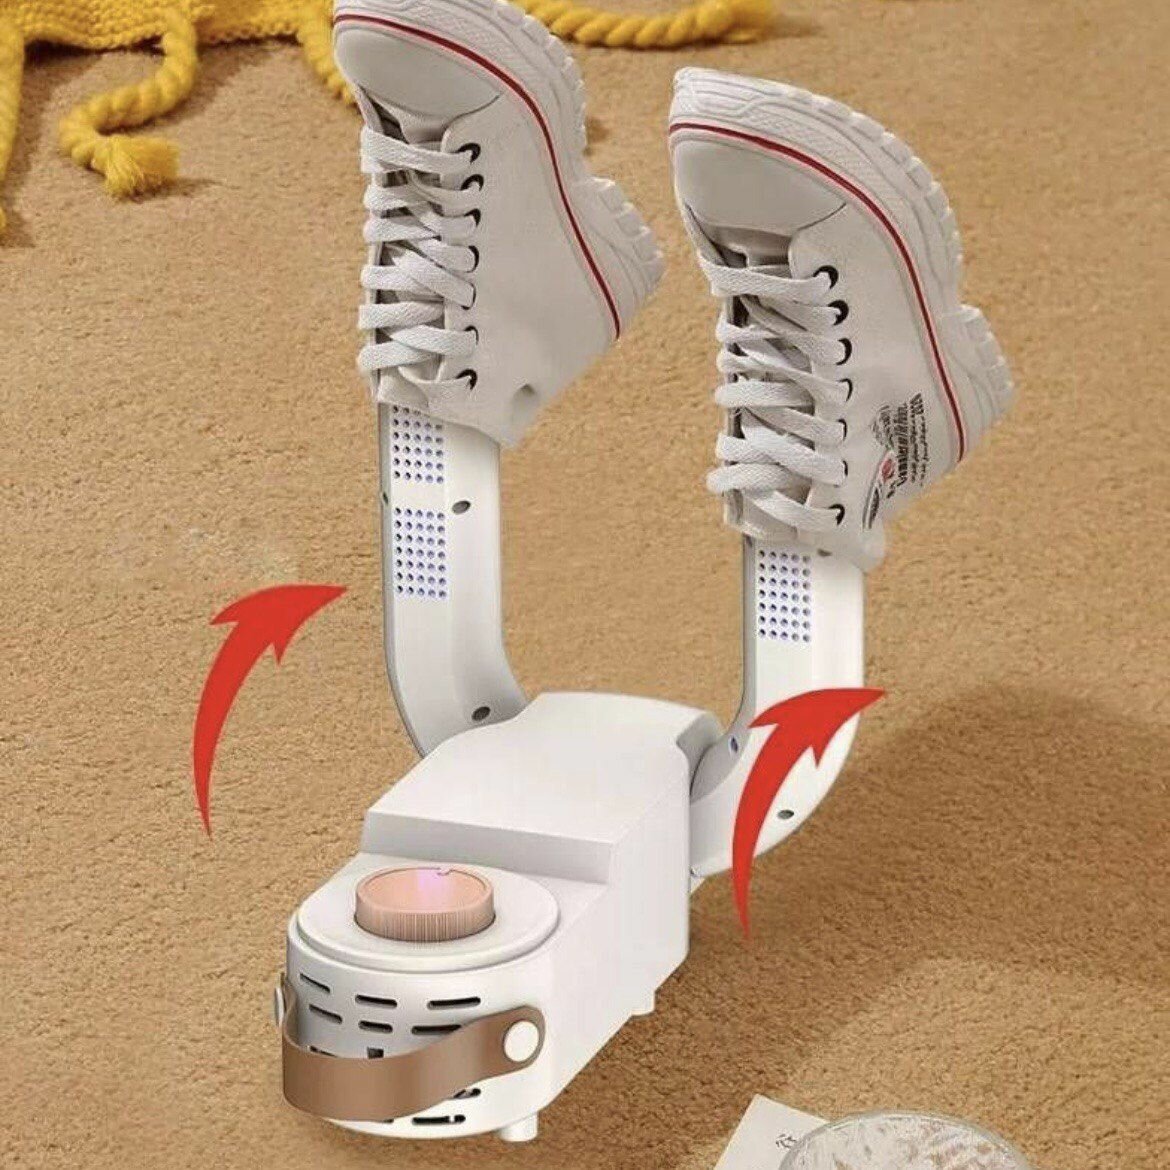 Электрическая антибактериальная складная сушилка для обуви Shoe Dryer.